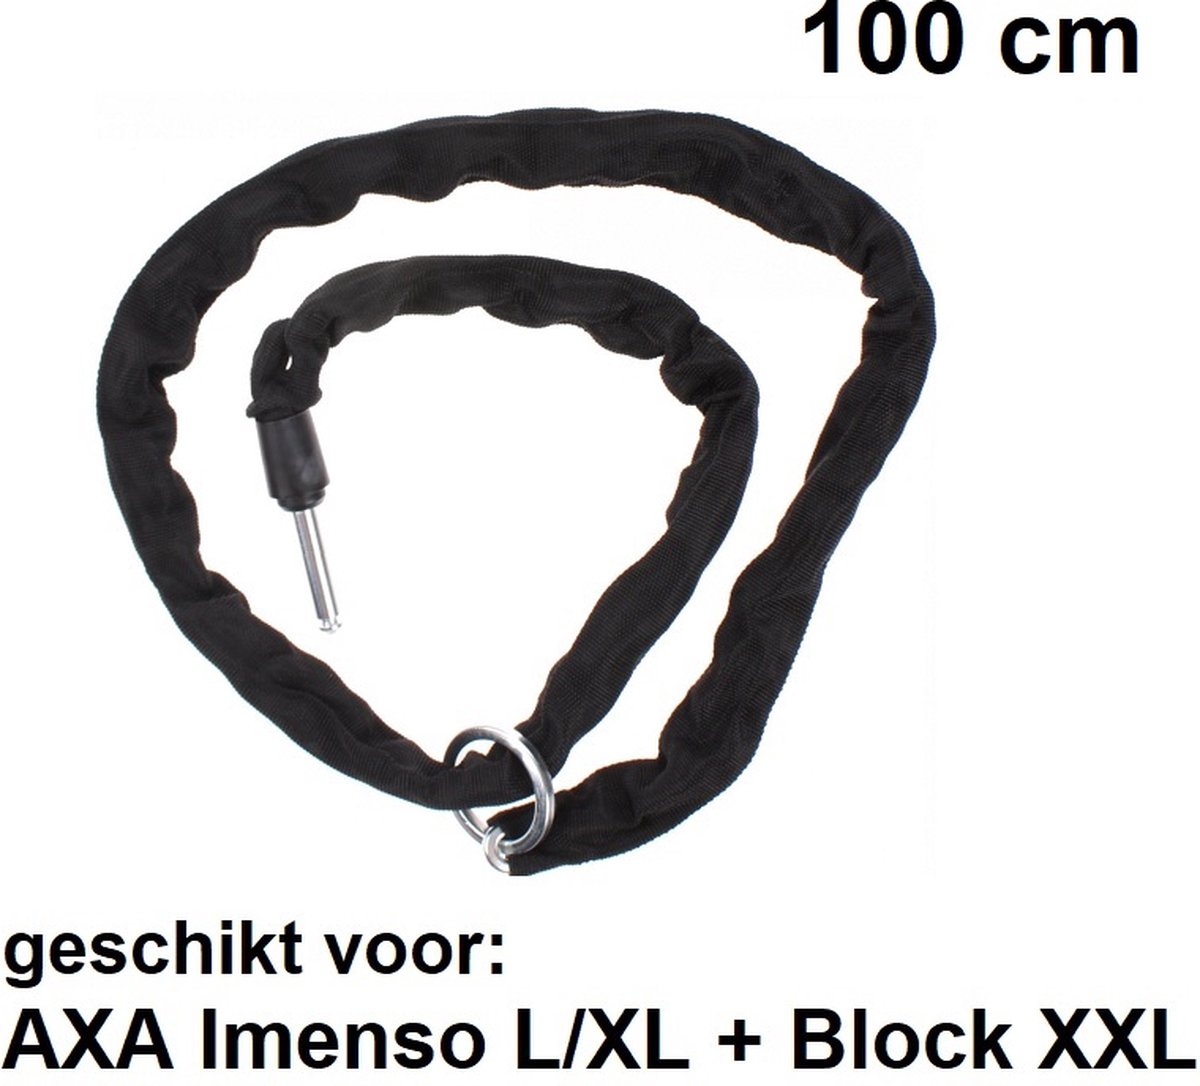 100cm insteekketting voor AXA Imenso L/XL en Block XXL sloten - ULC plug in - Zwart